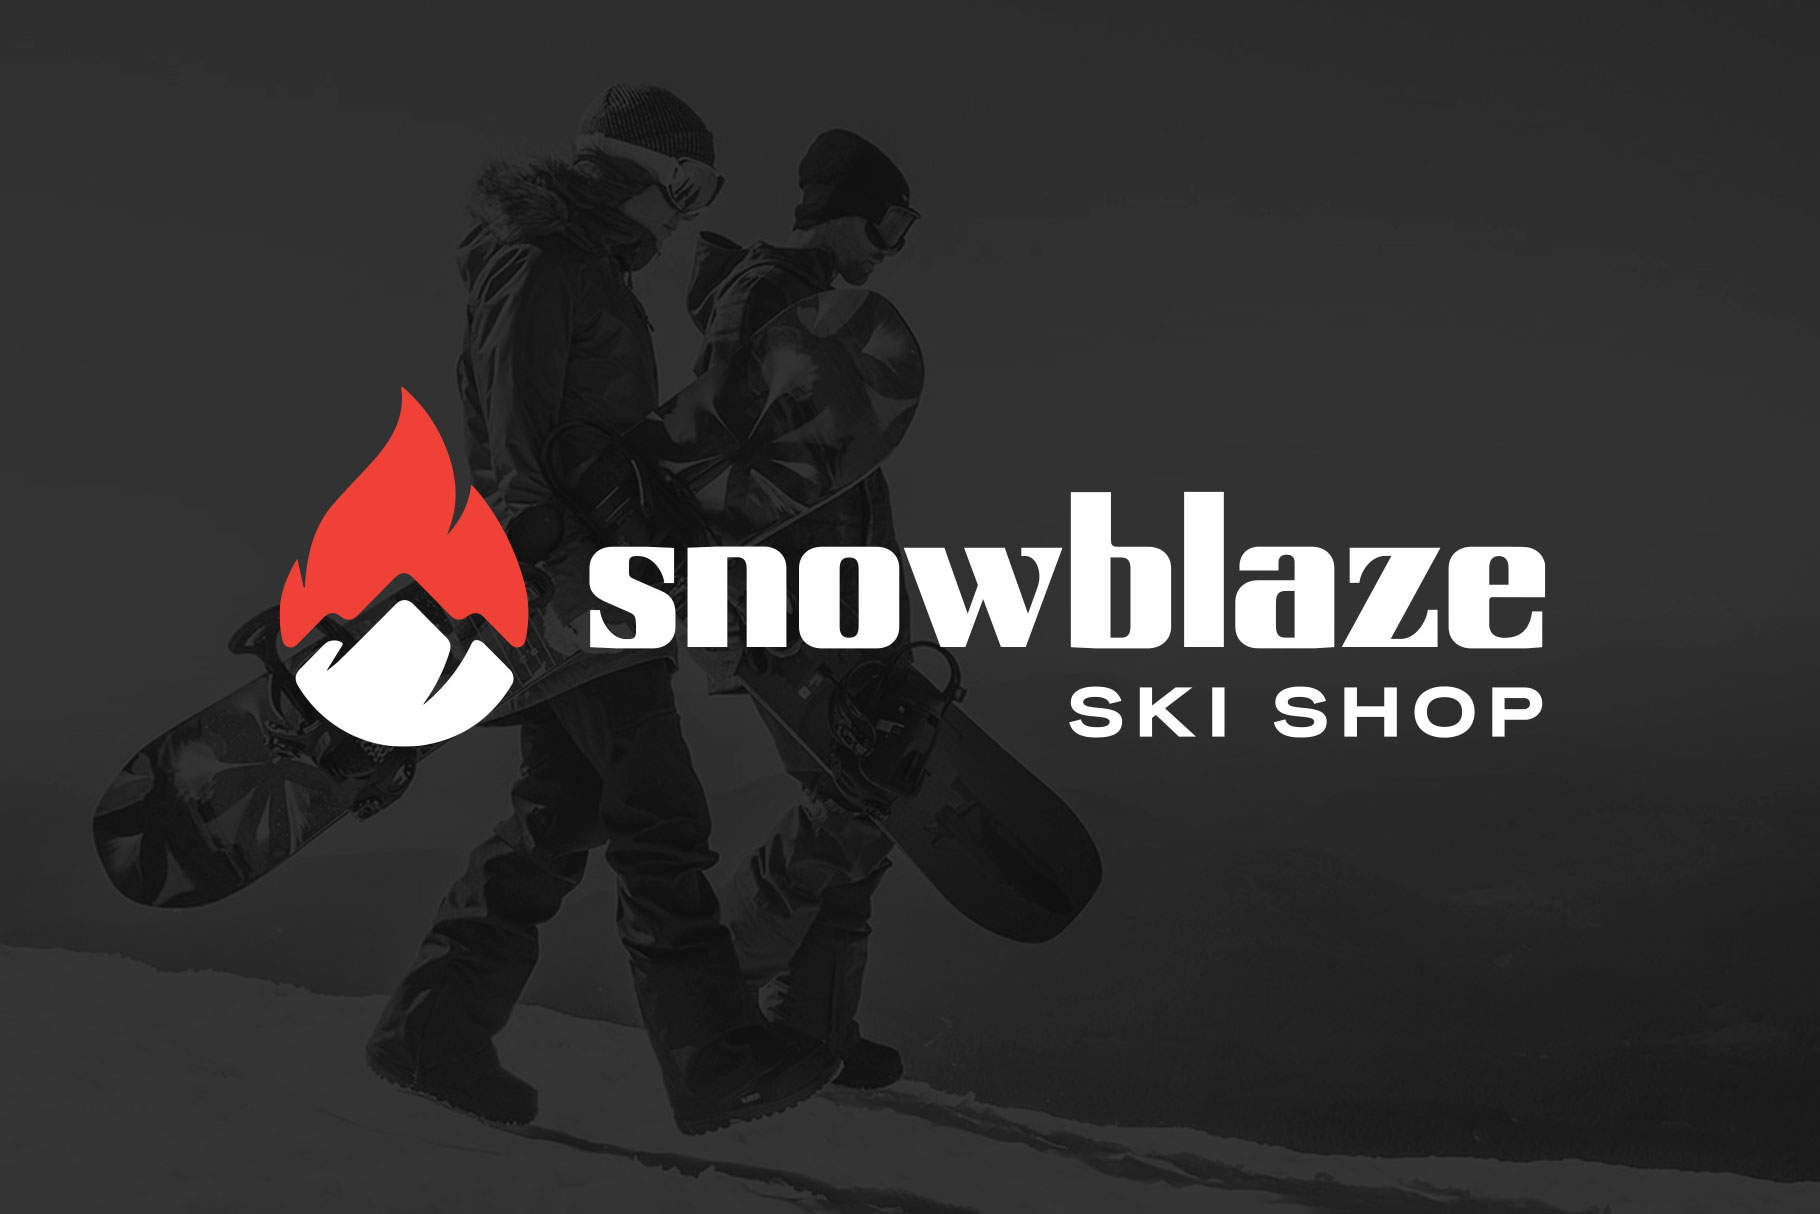 Snowblaze Ski Shop logo by Pound Design of Austin Texas